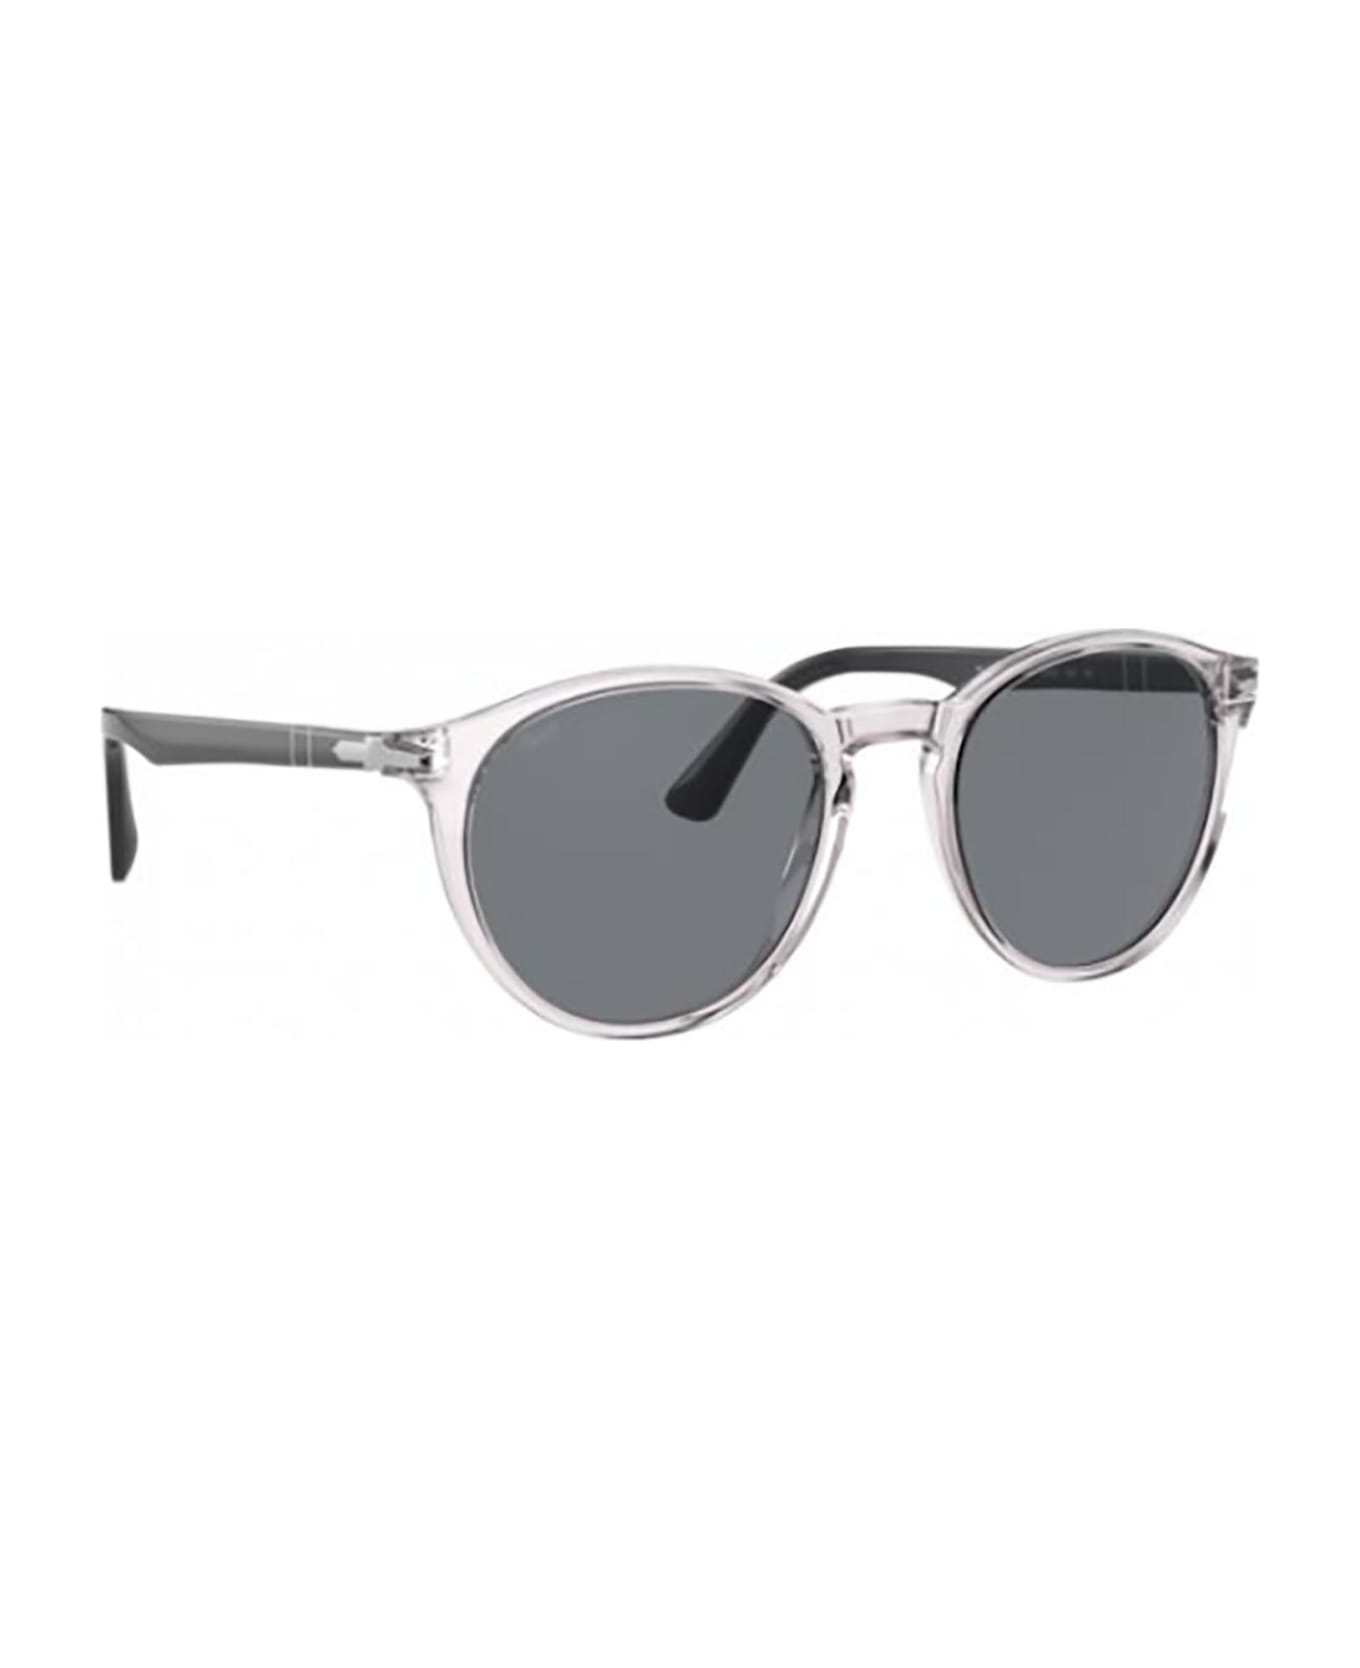 Persol Po3152s Grey Sunglasses - Grey